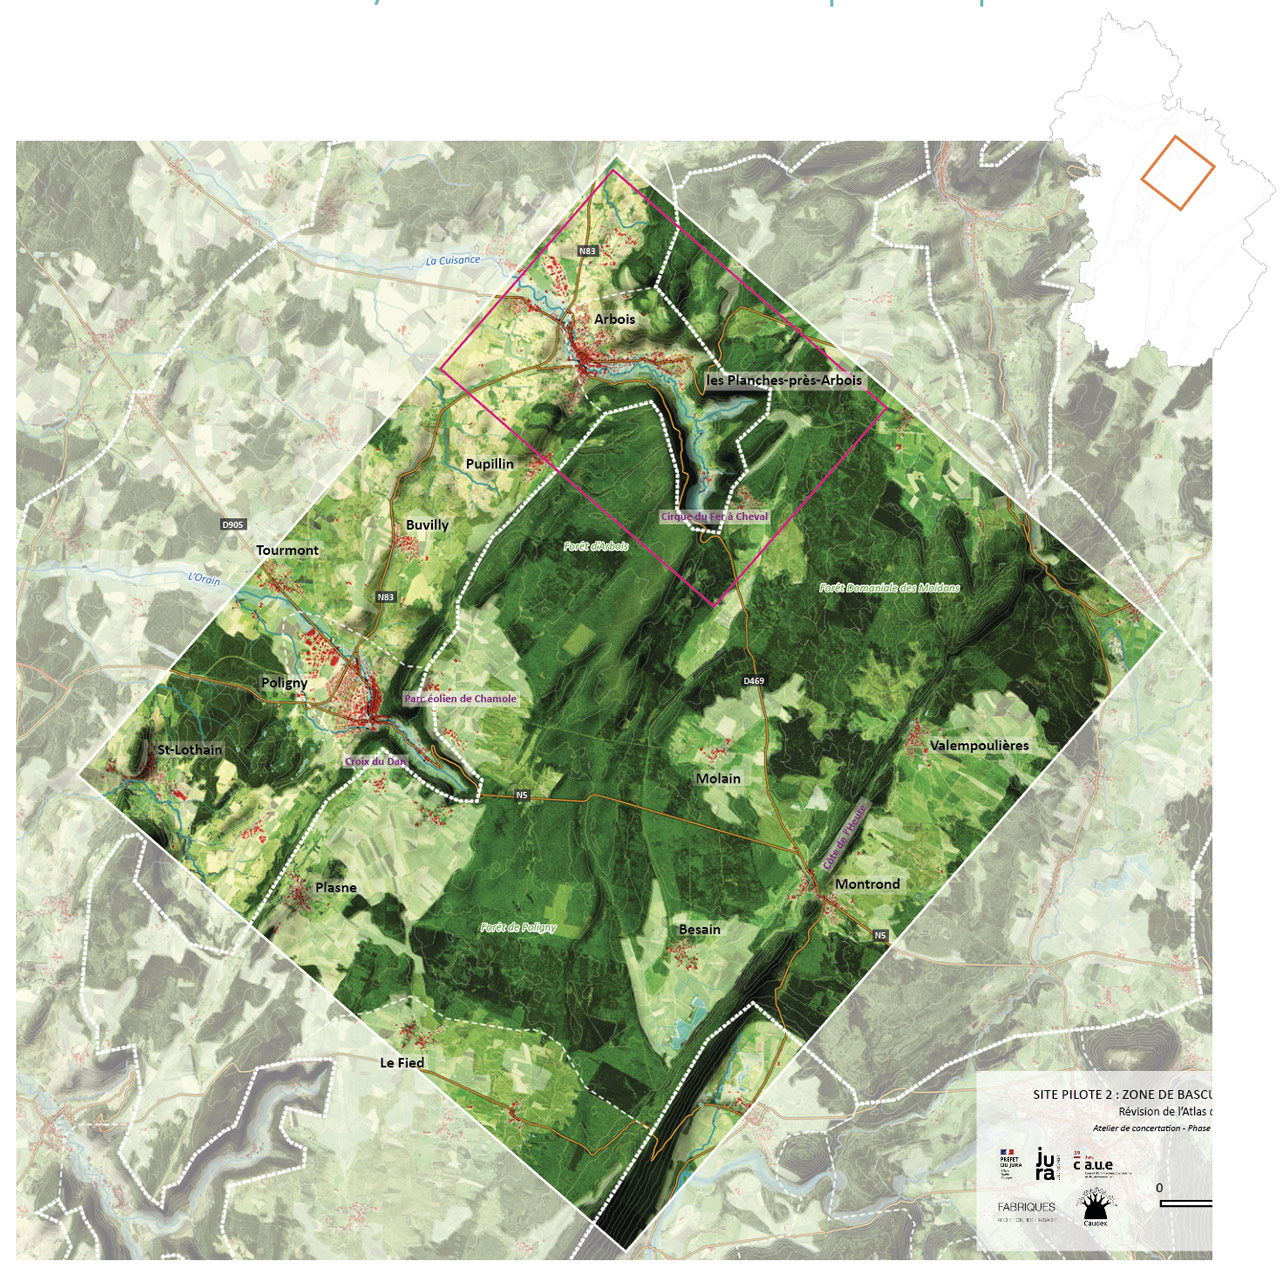 Carte de localisation du site pilote 2 - Zone de bascule entre plaine et plateau